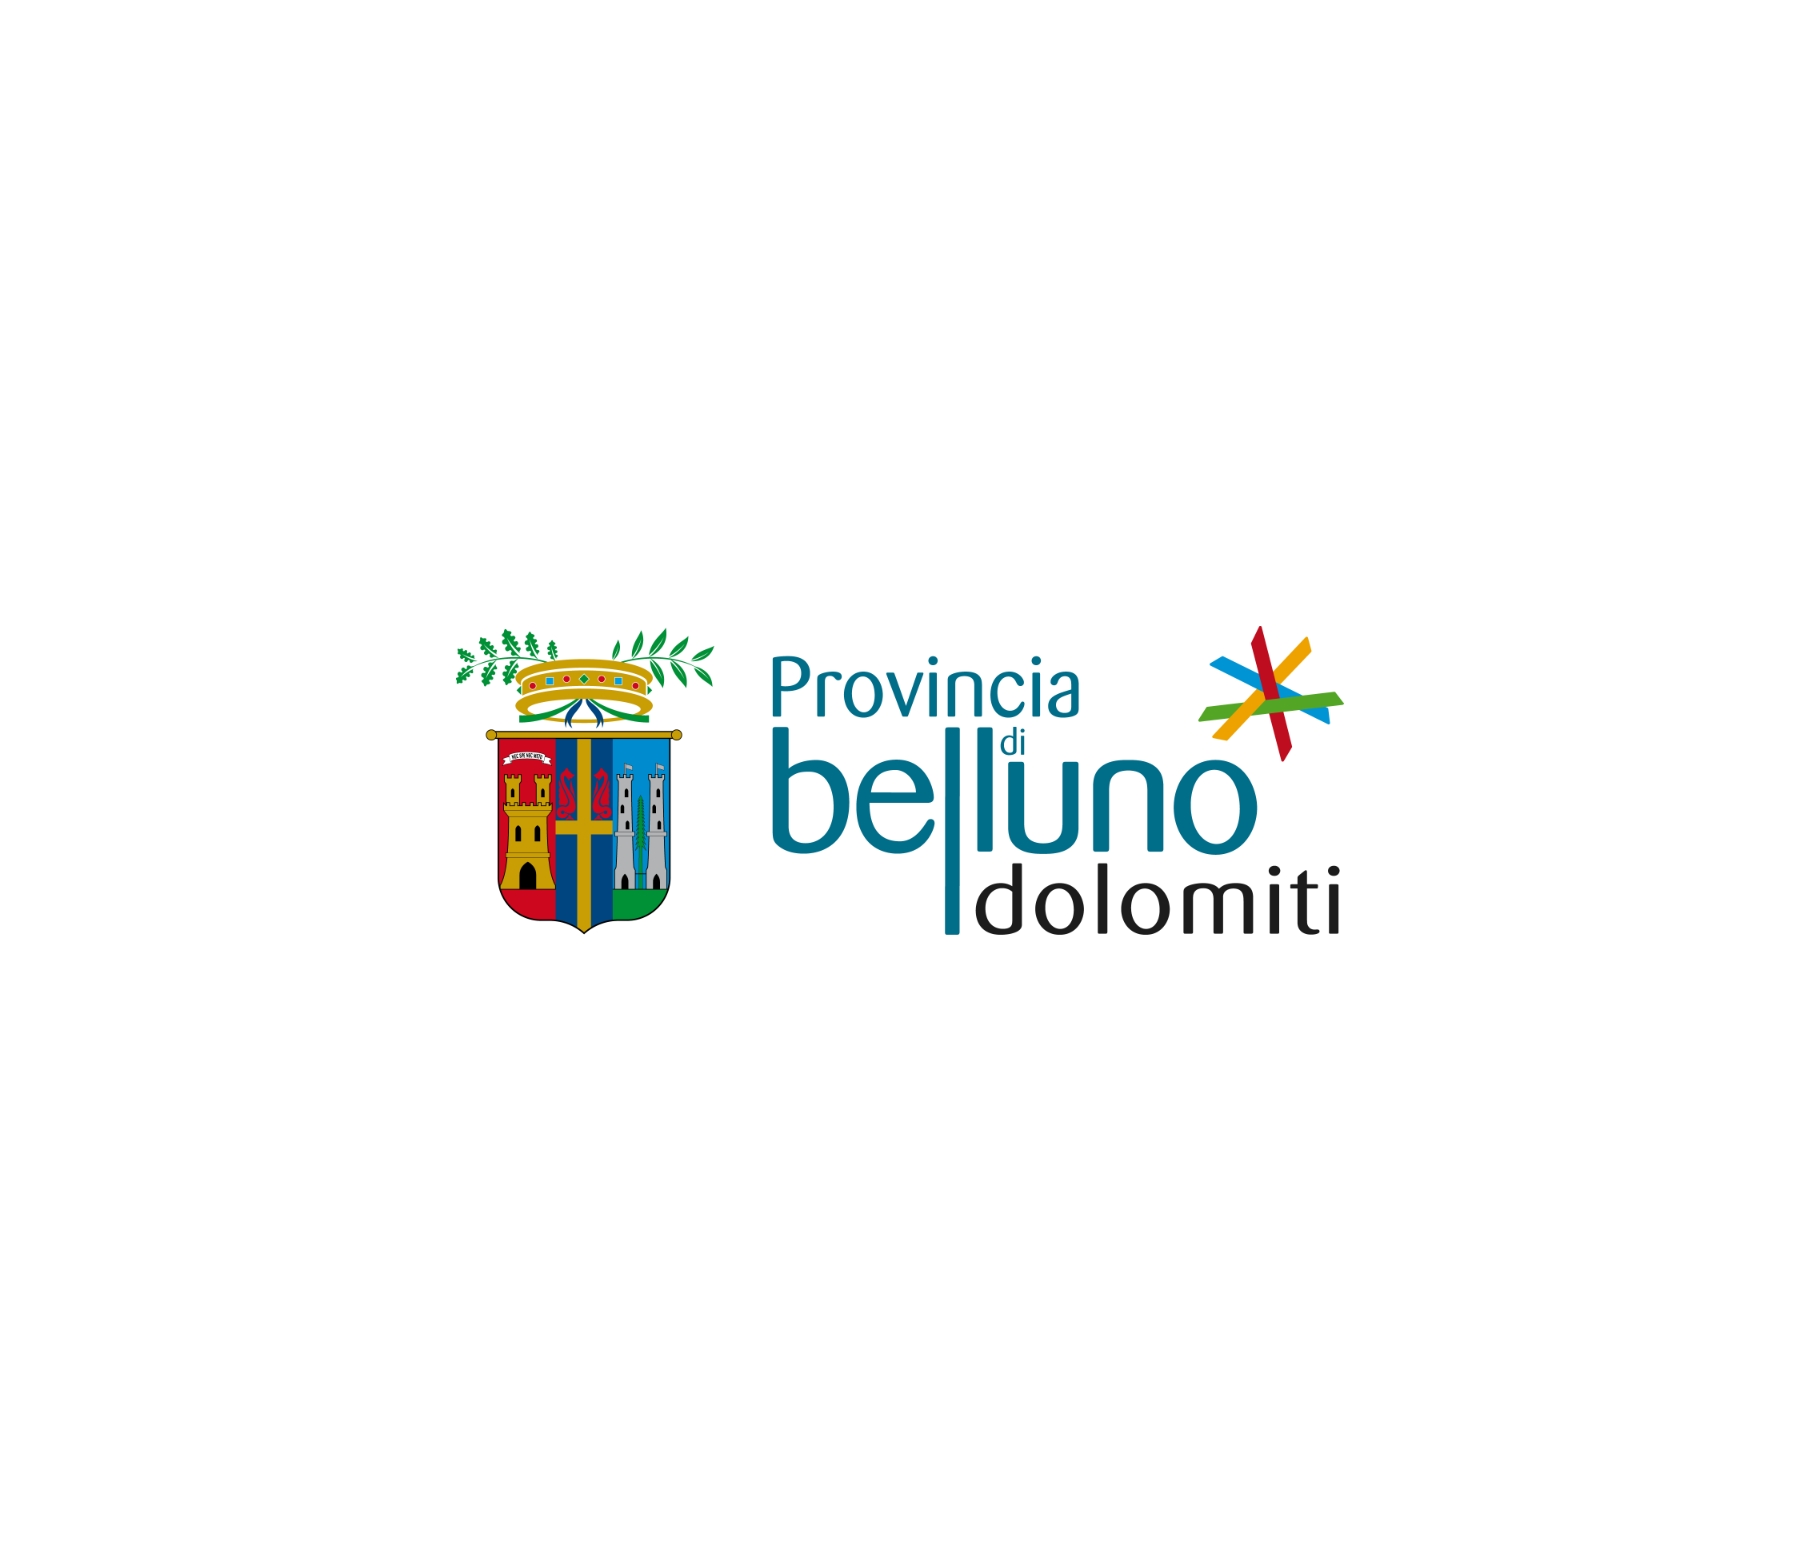 Provincia_Belluno_Dolomiti